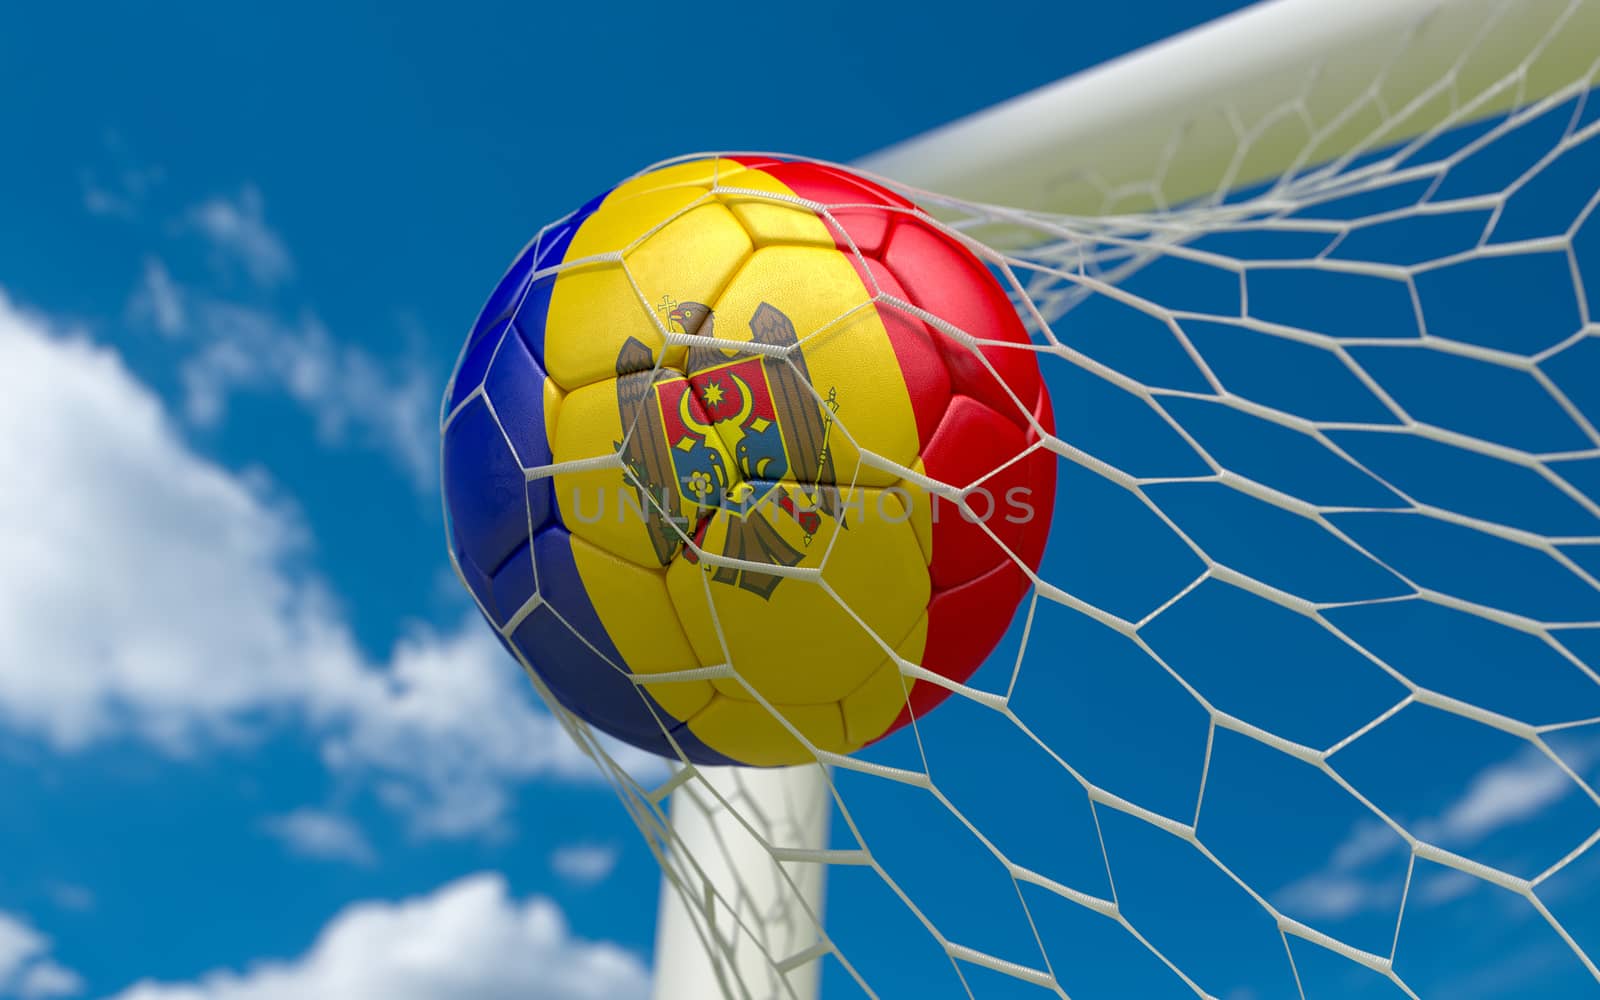 Moldova flag and soccer ball, football in goal net